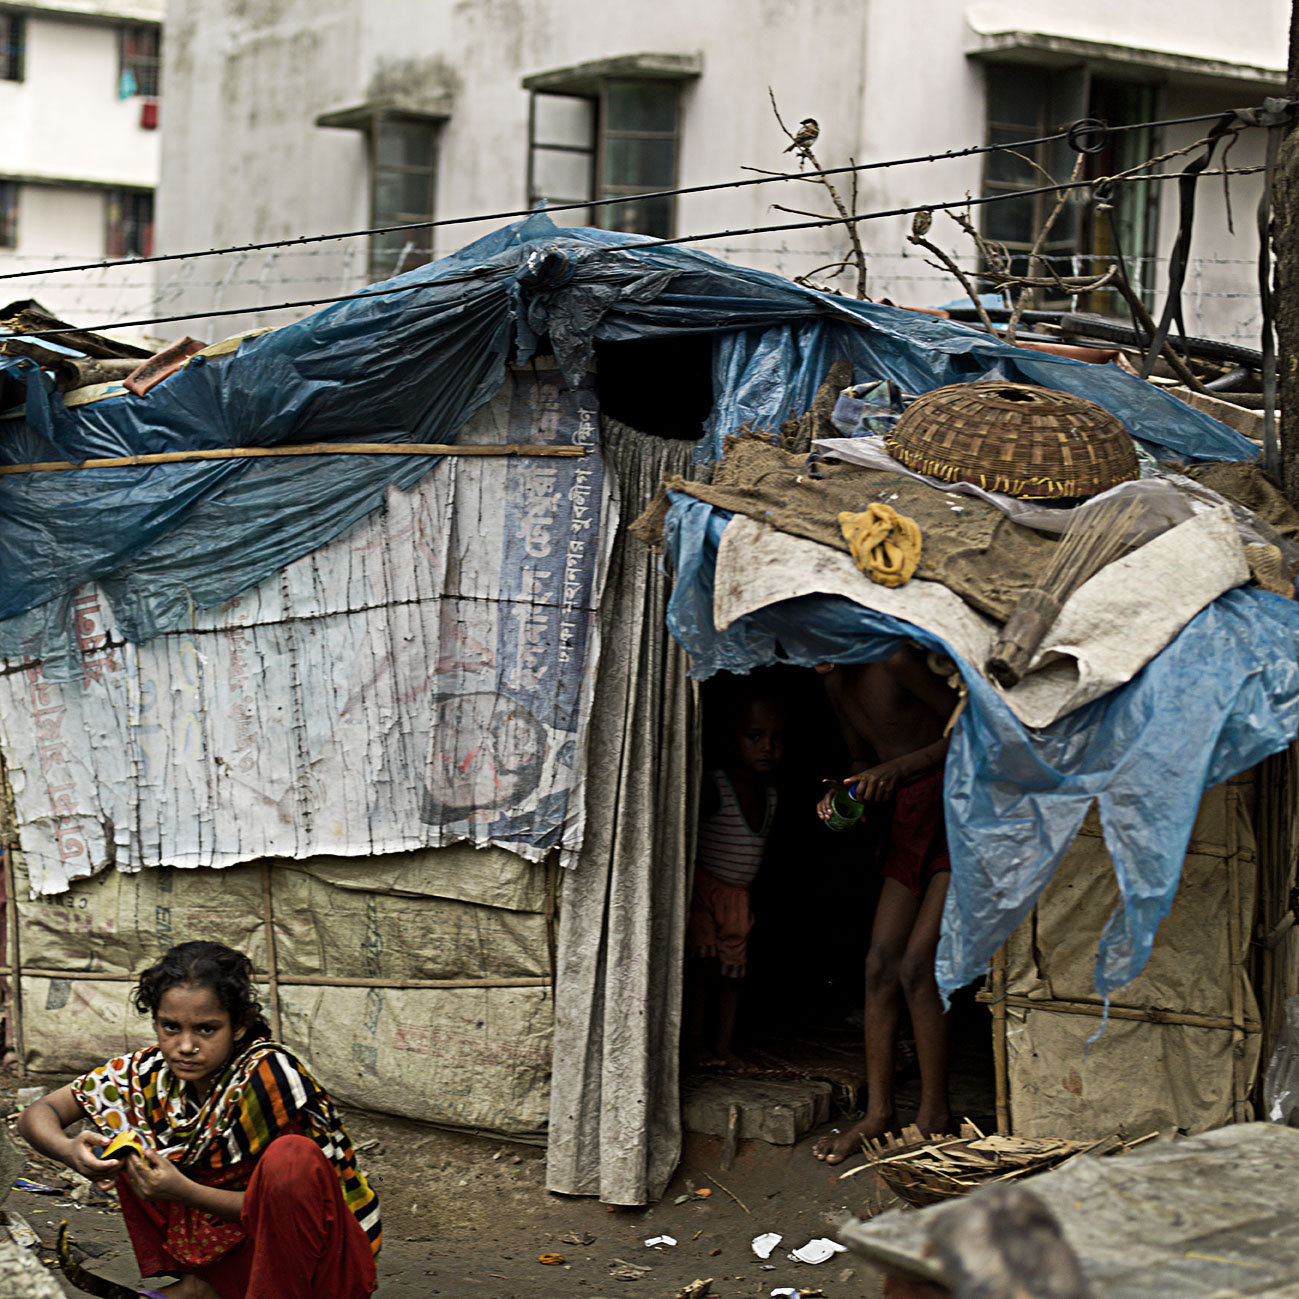 50. Homeless Bangladesh